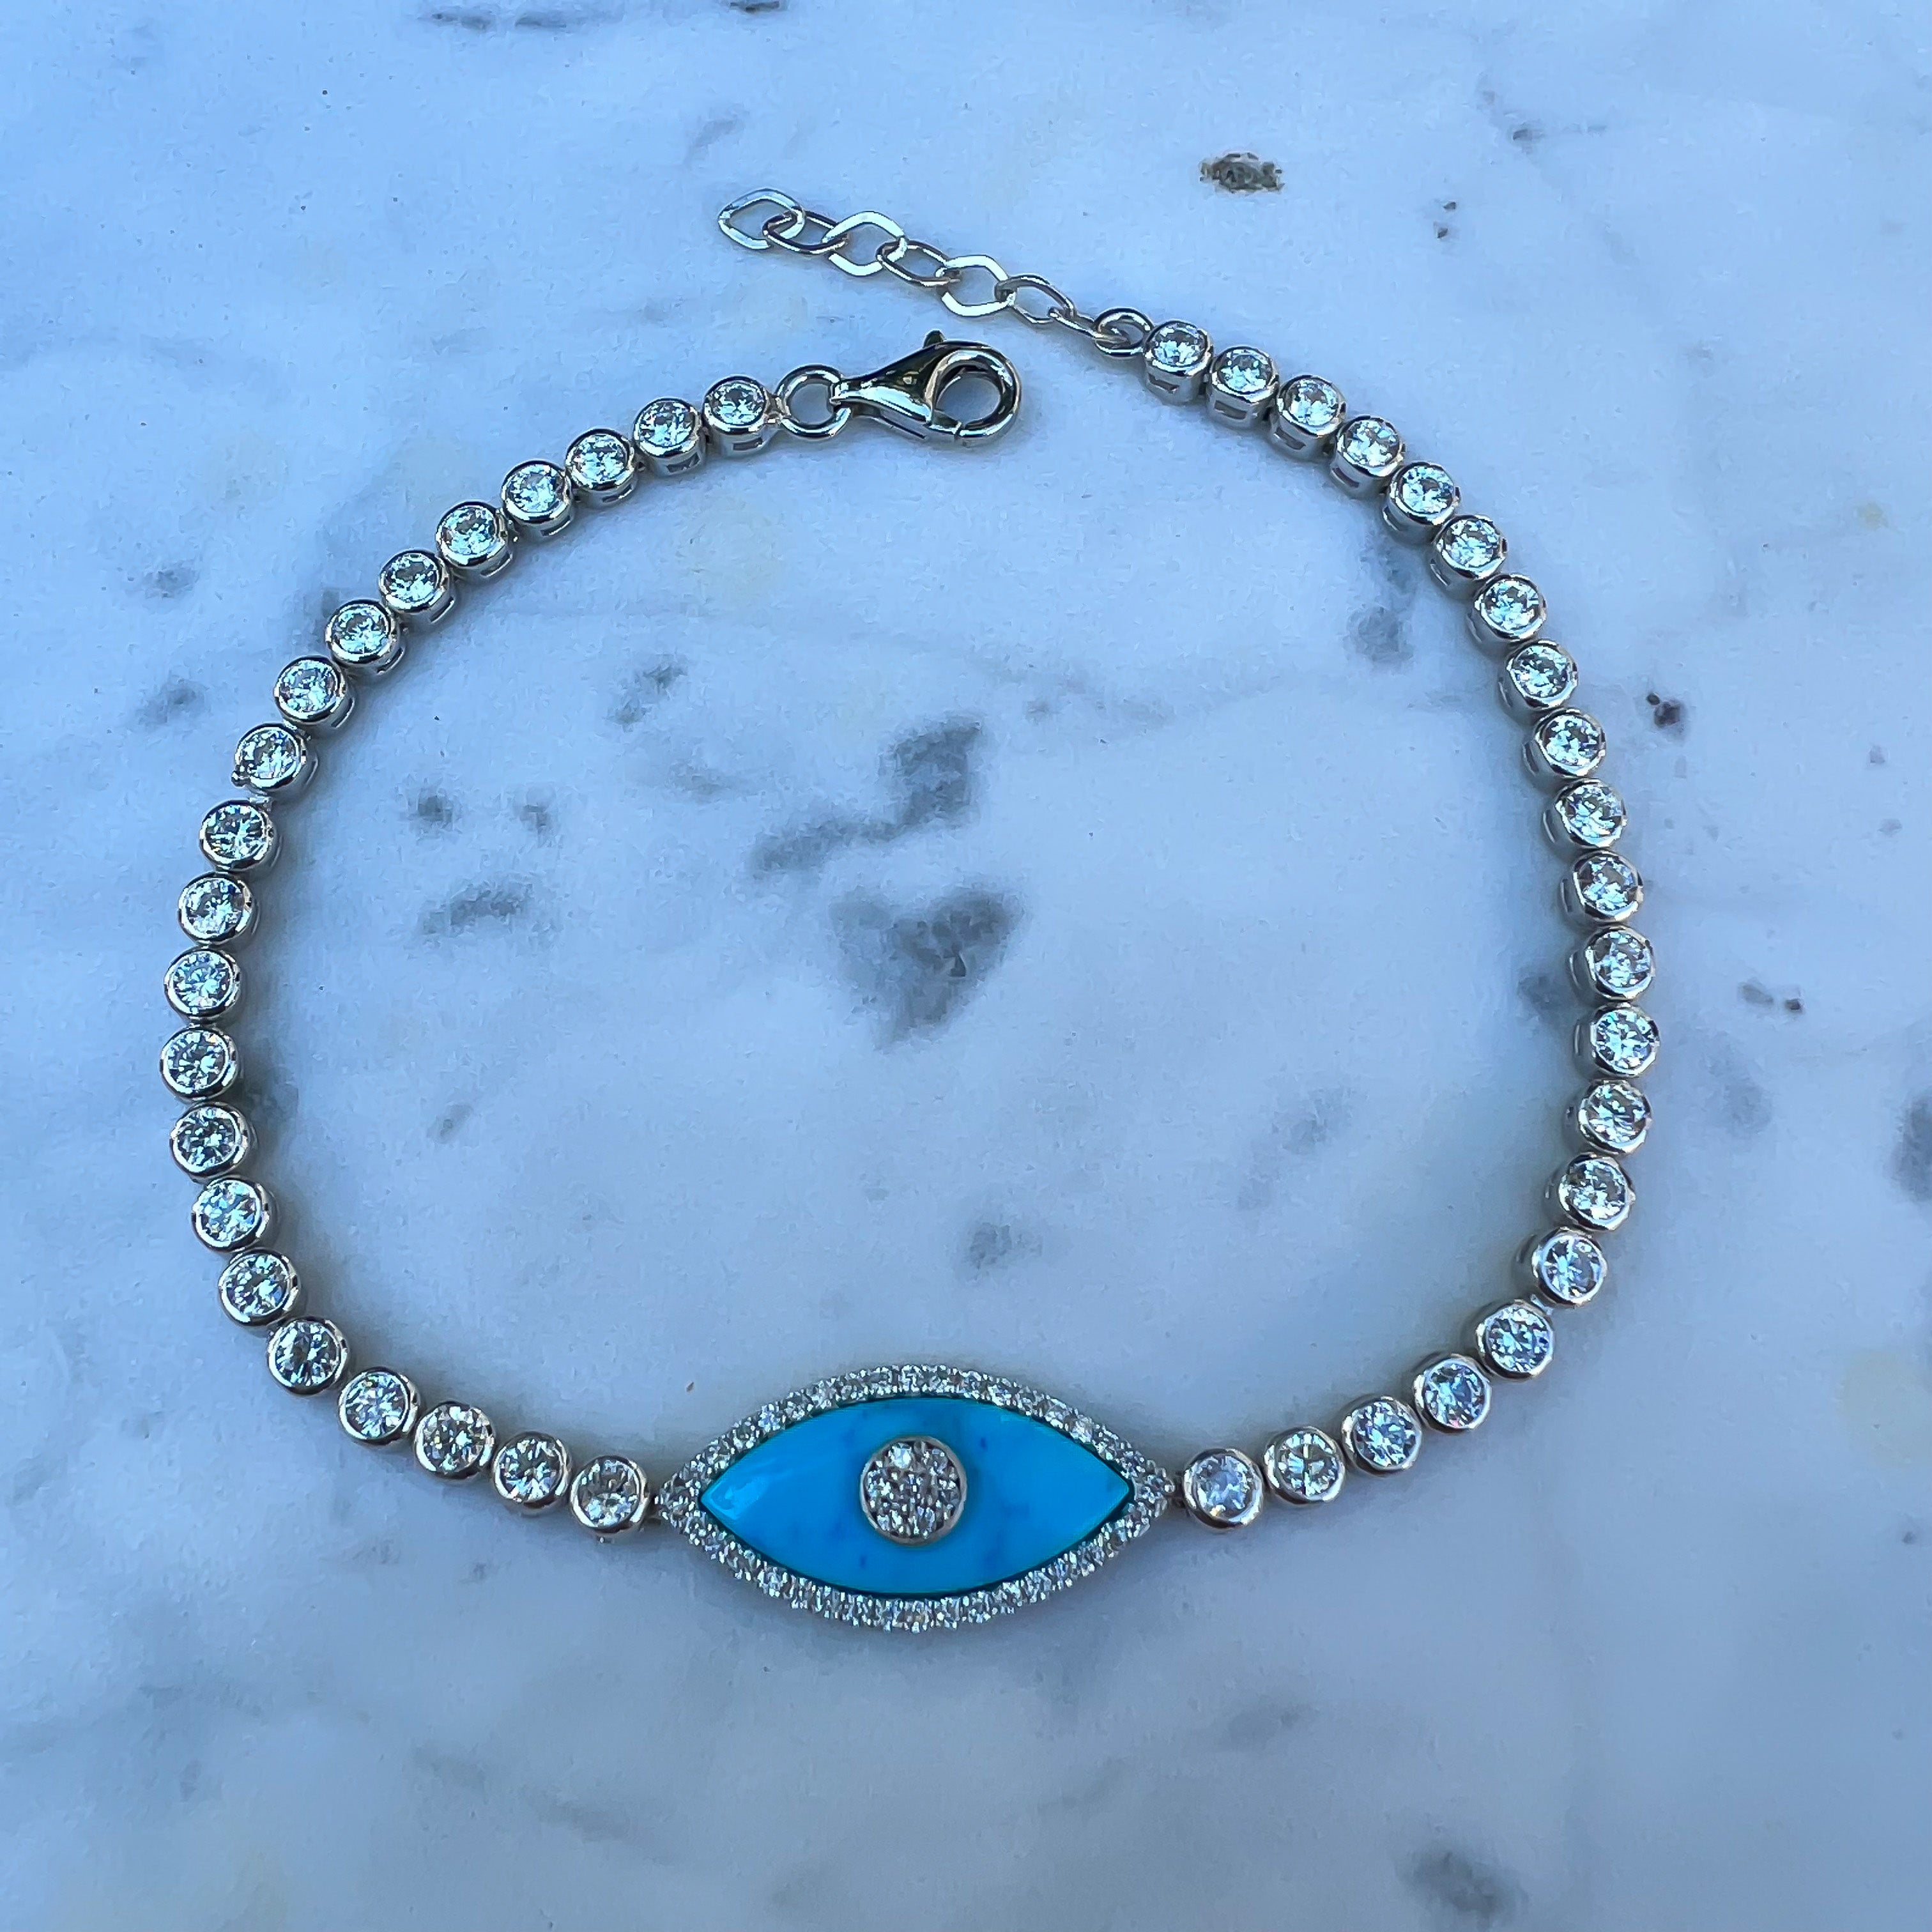 "Gemma” Turquoise Sterling silver tennis eye bracelet